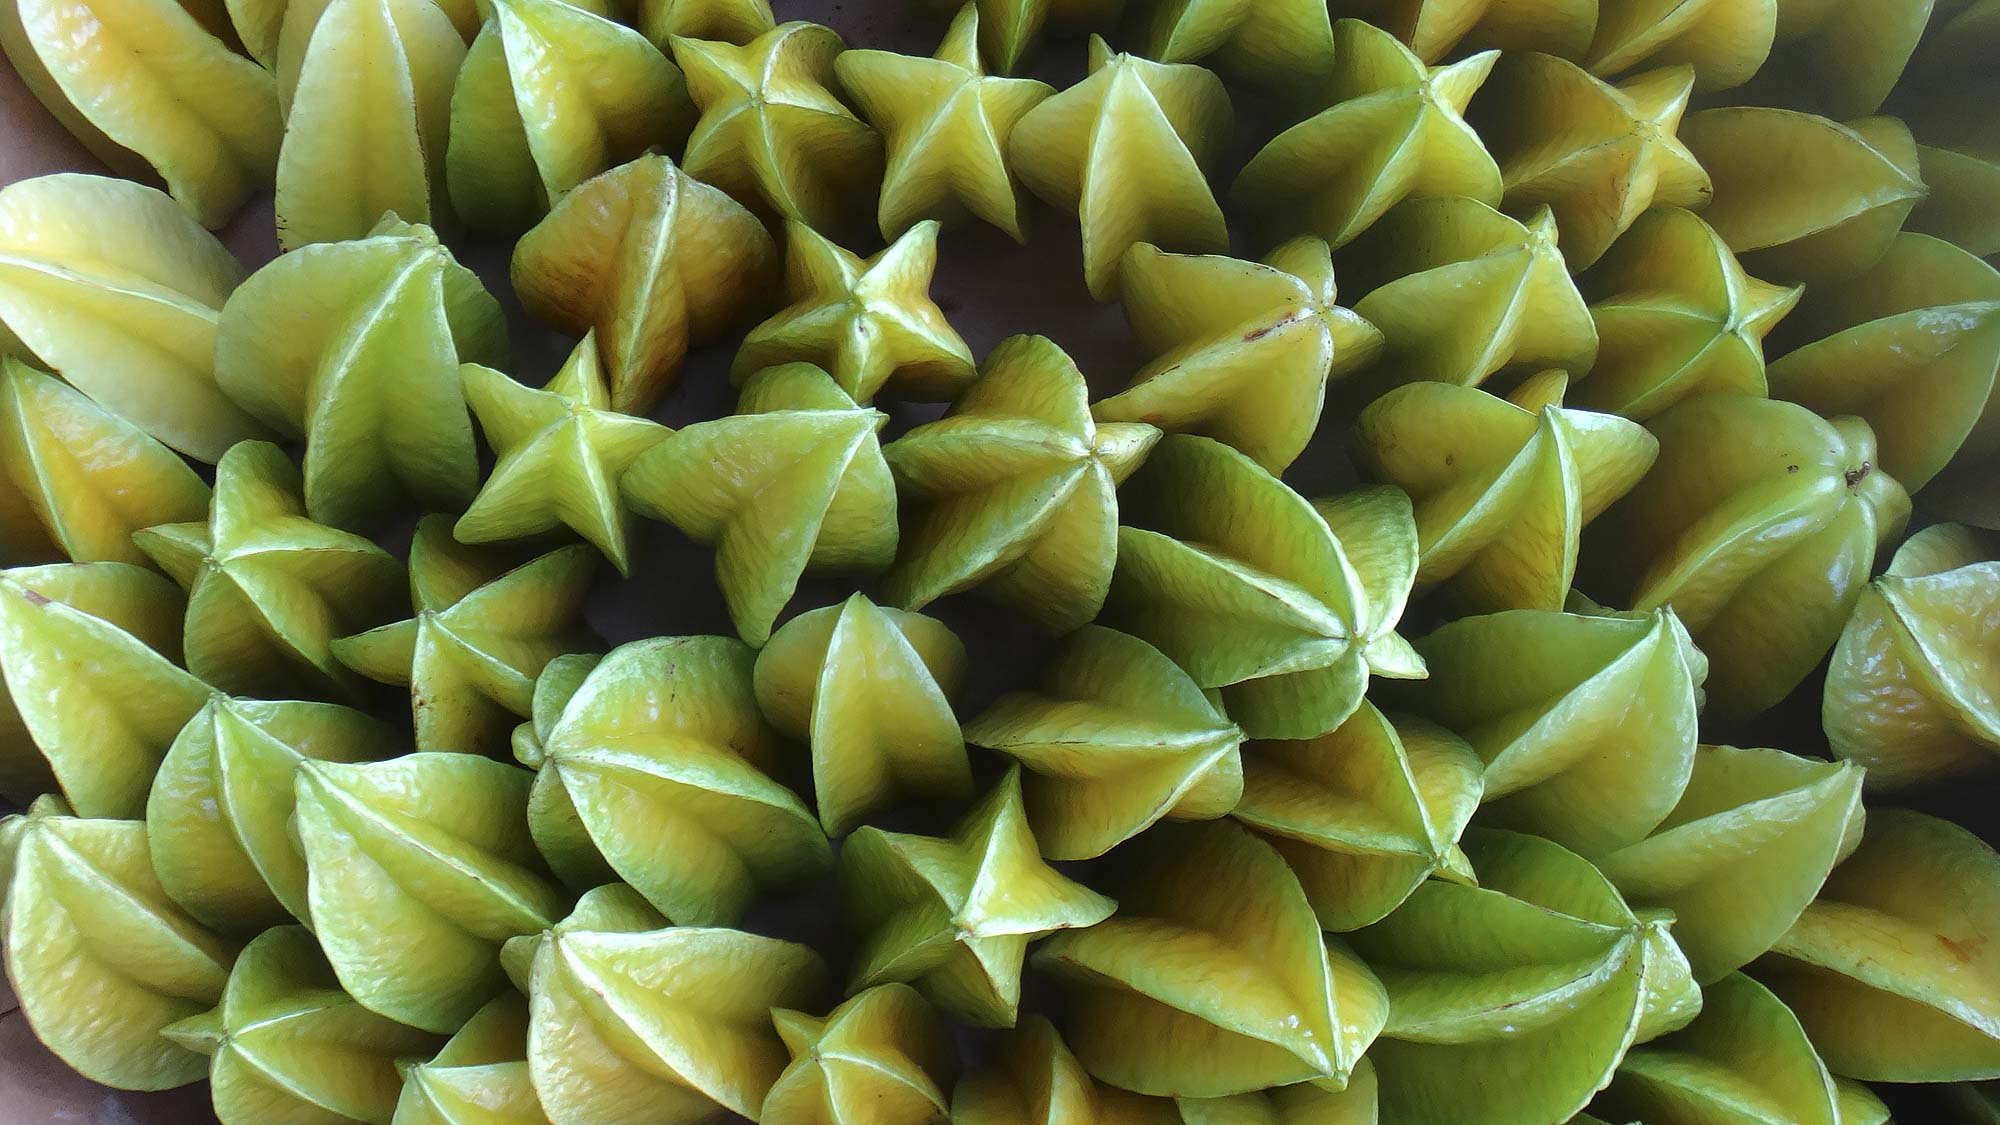 Star Fruit in the Farmer's Market in Hilo, Hawaii.